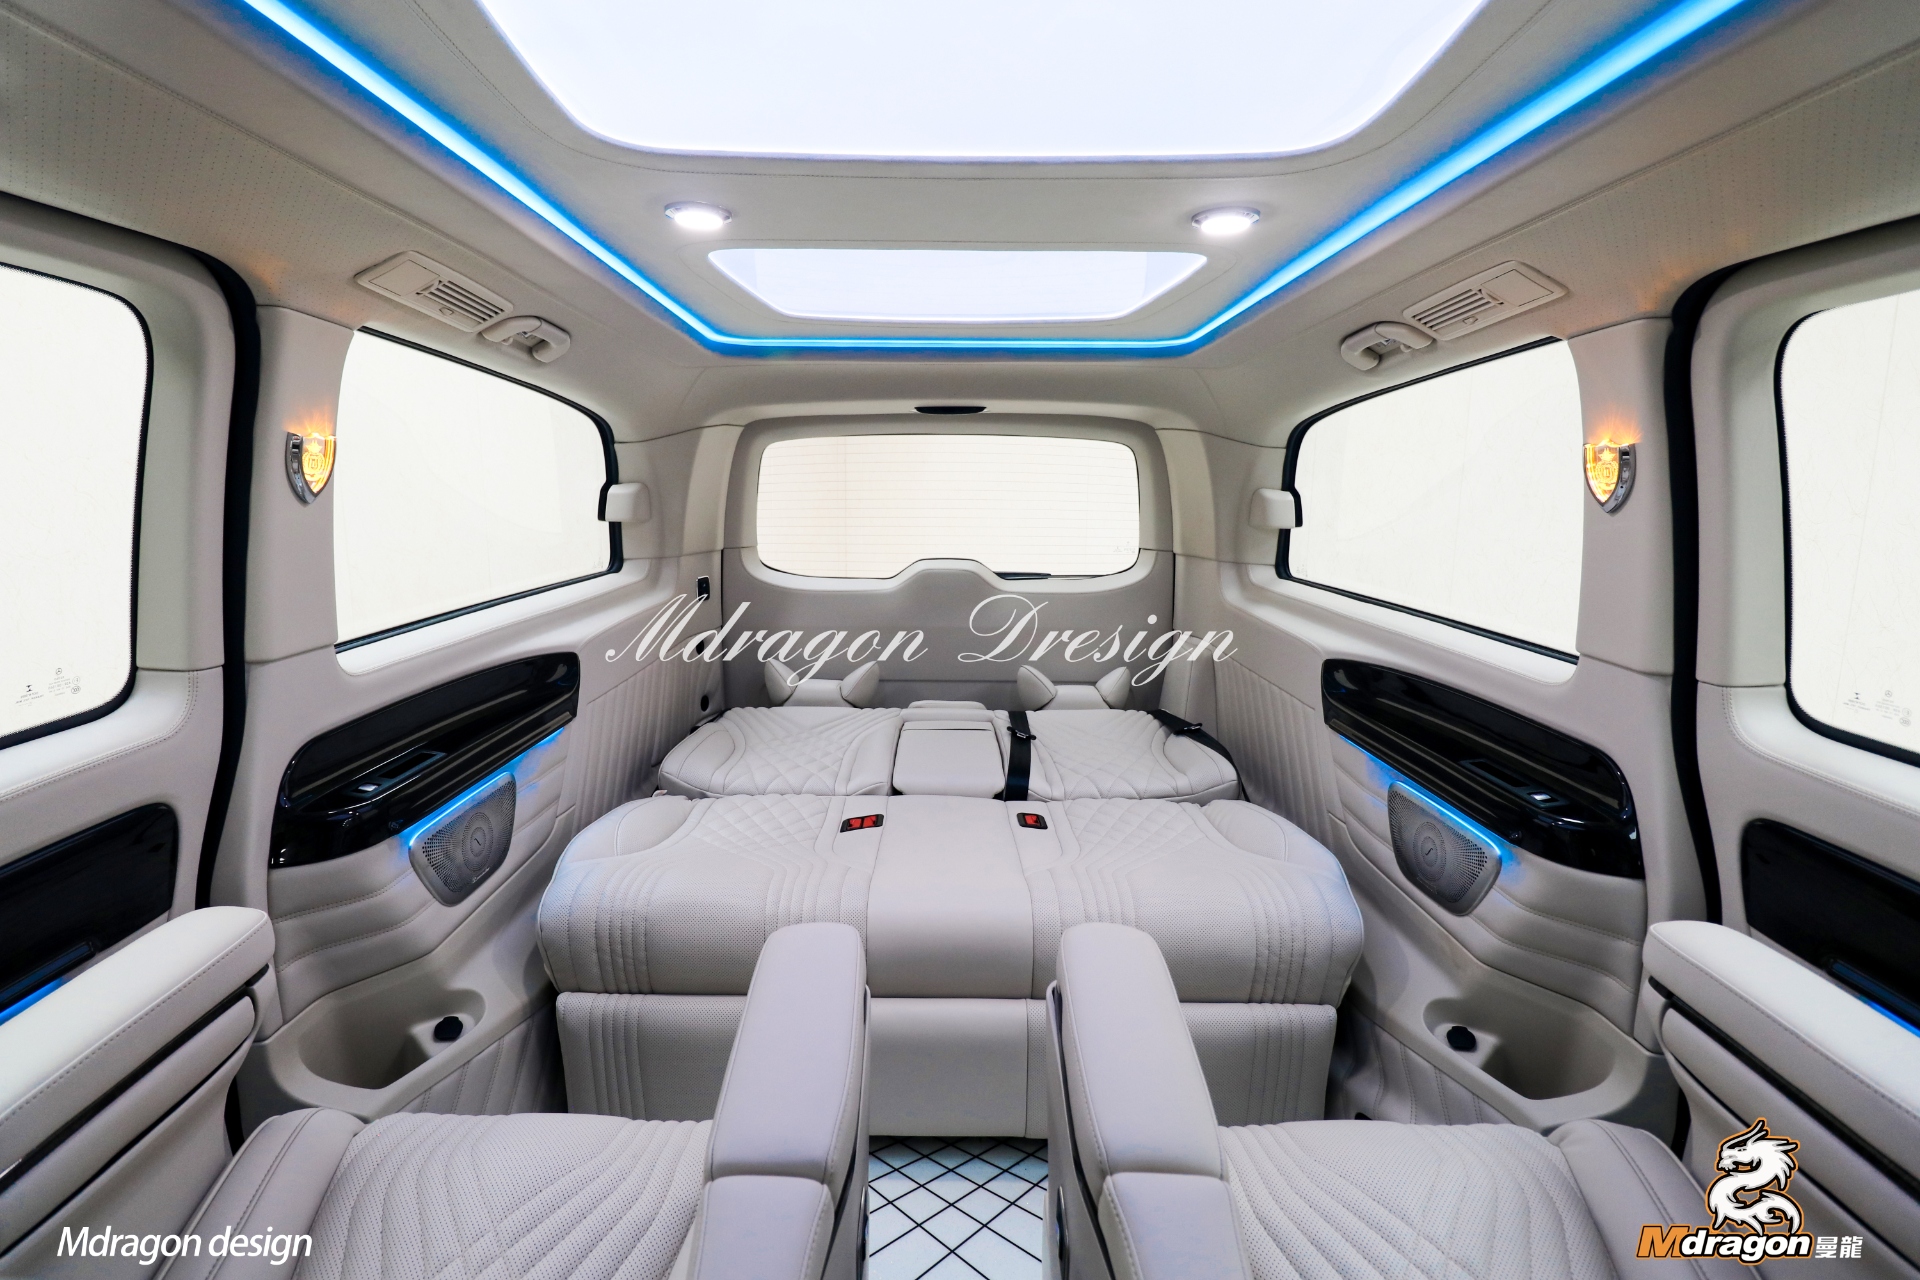 No.383 2015-2018 Benz Vito interior modification